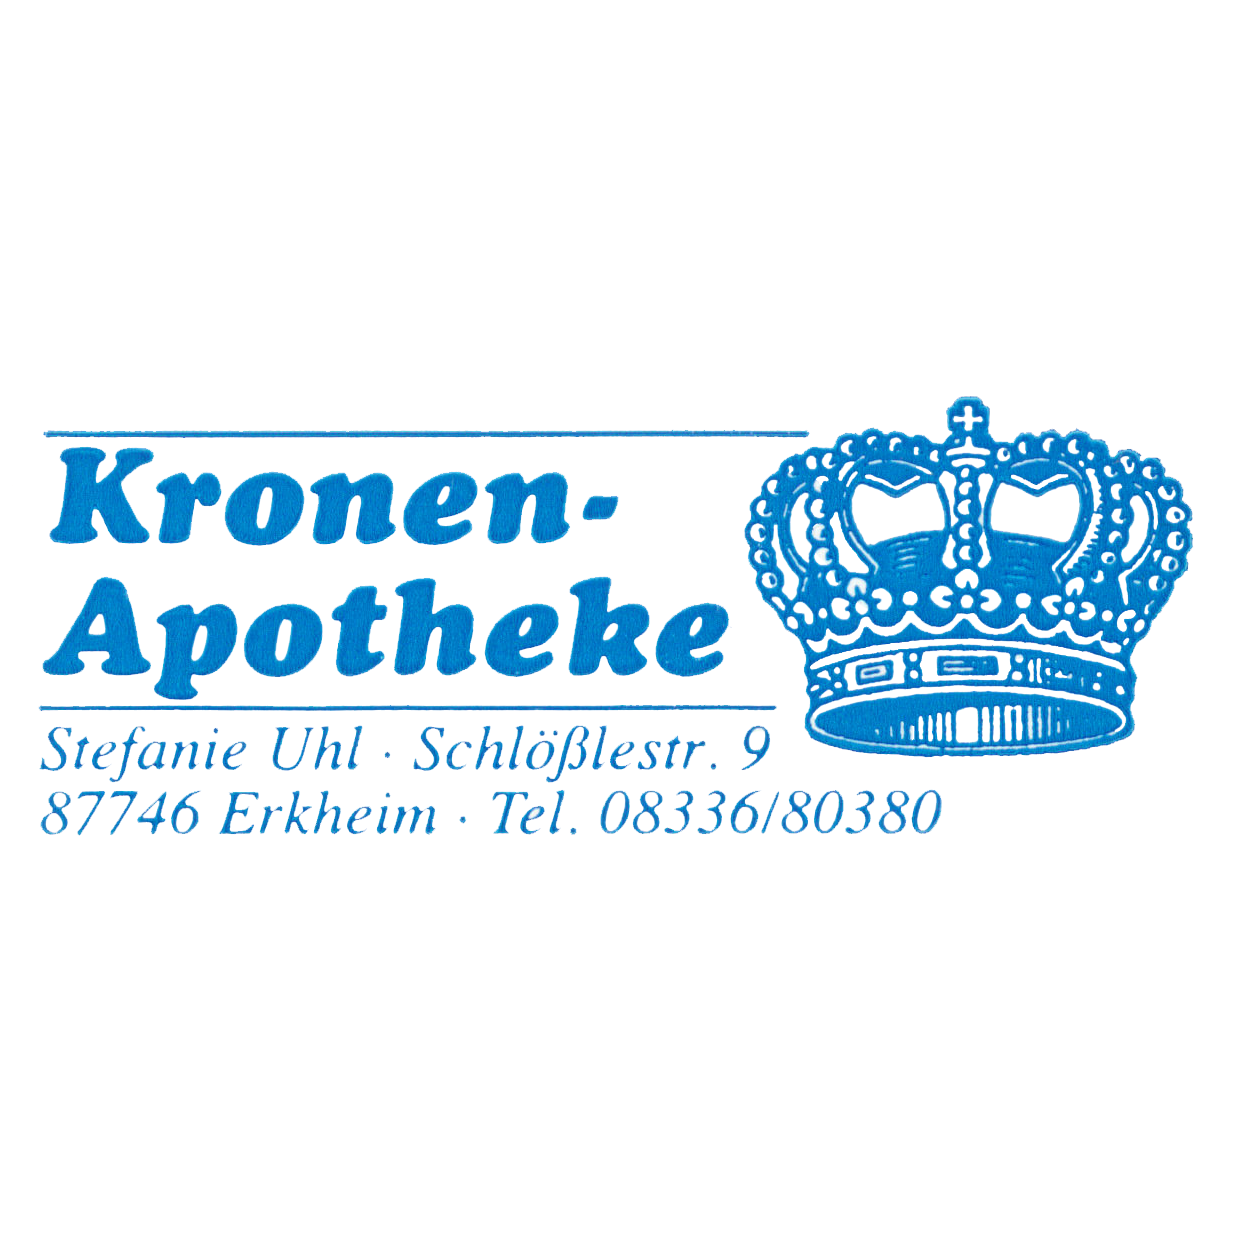 Kronen-Apotheke in Erkheim - Logo